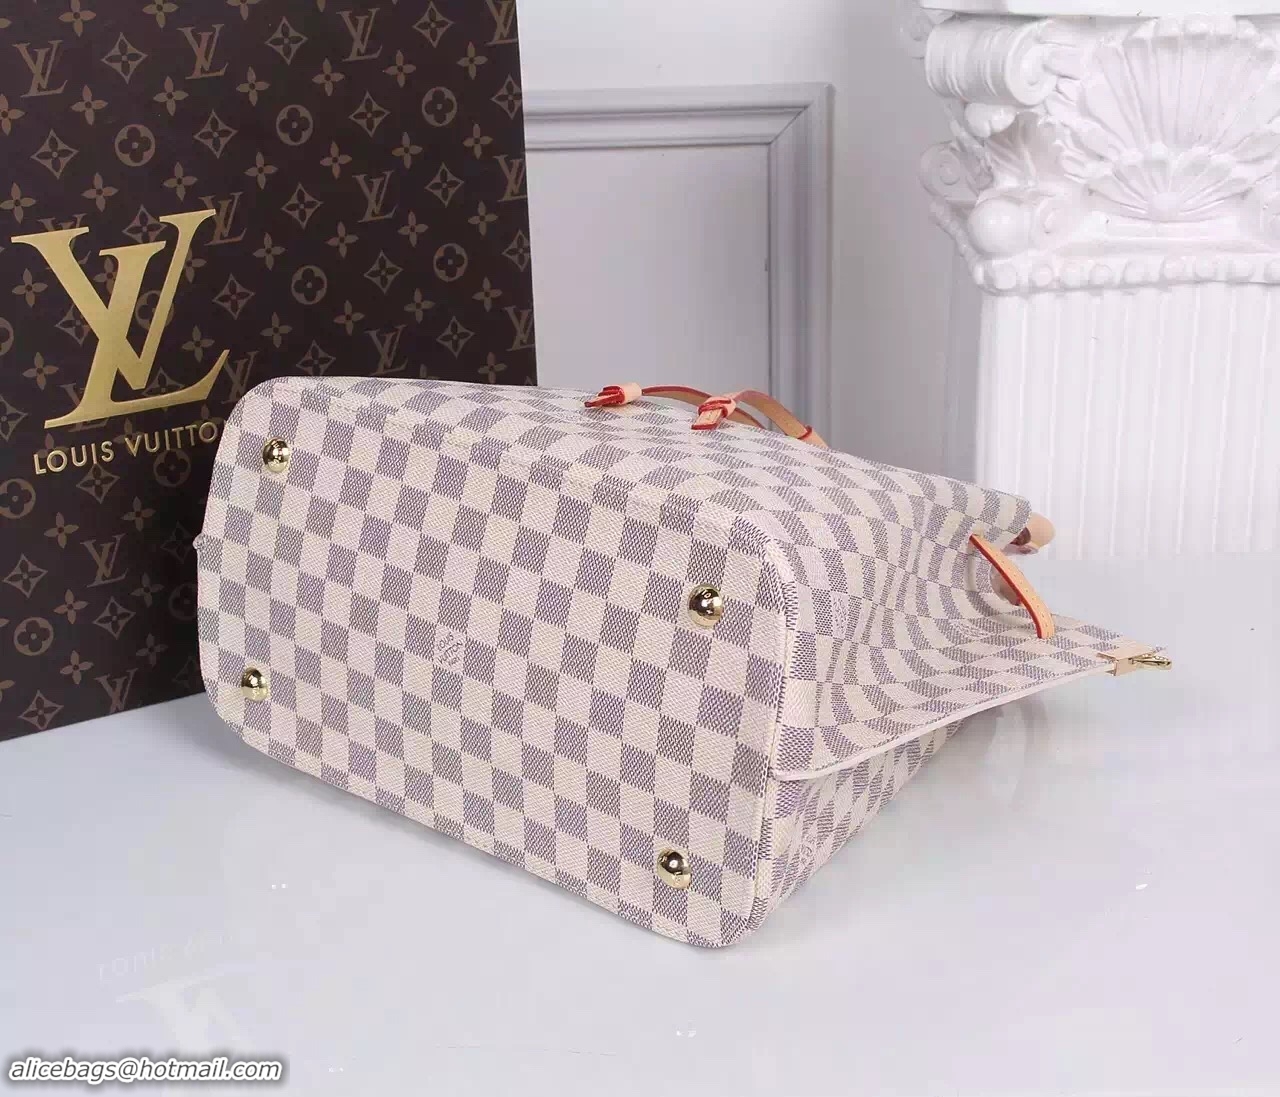 New Style Louis Vuitton Damier Azur Canvas Shoulder Bag 41579